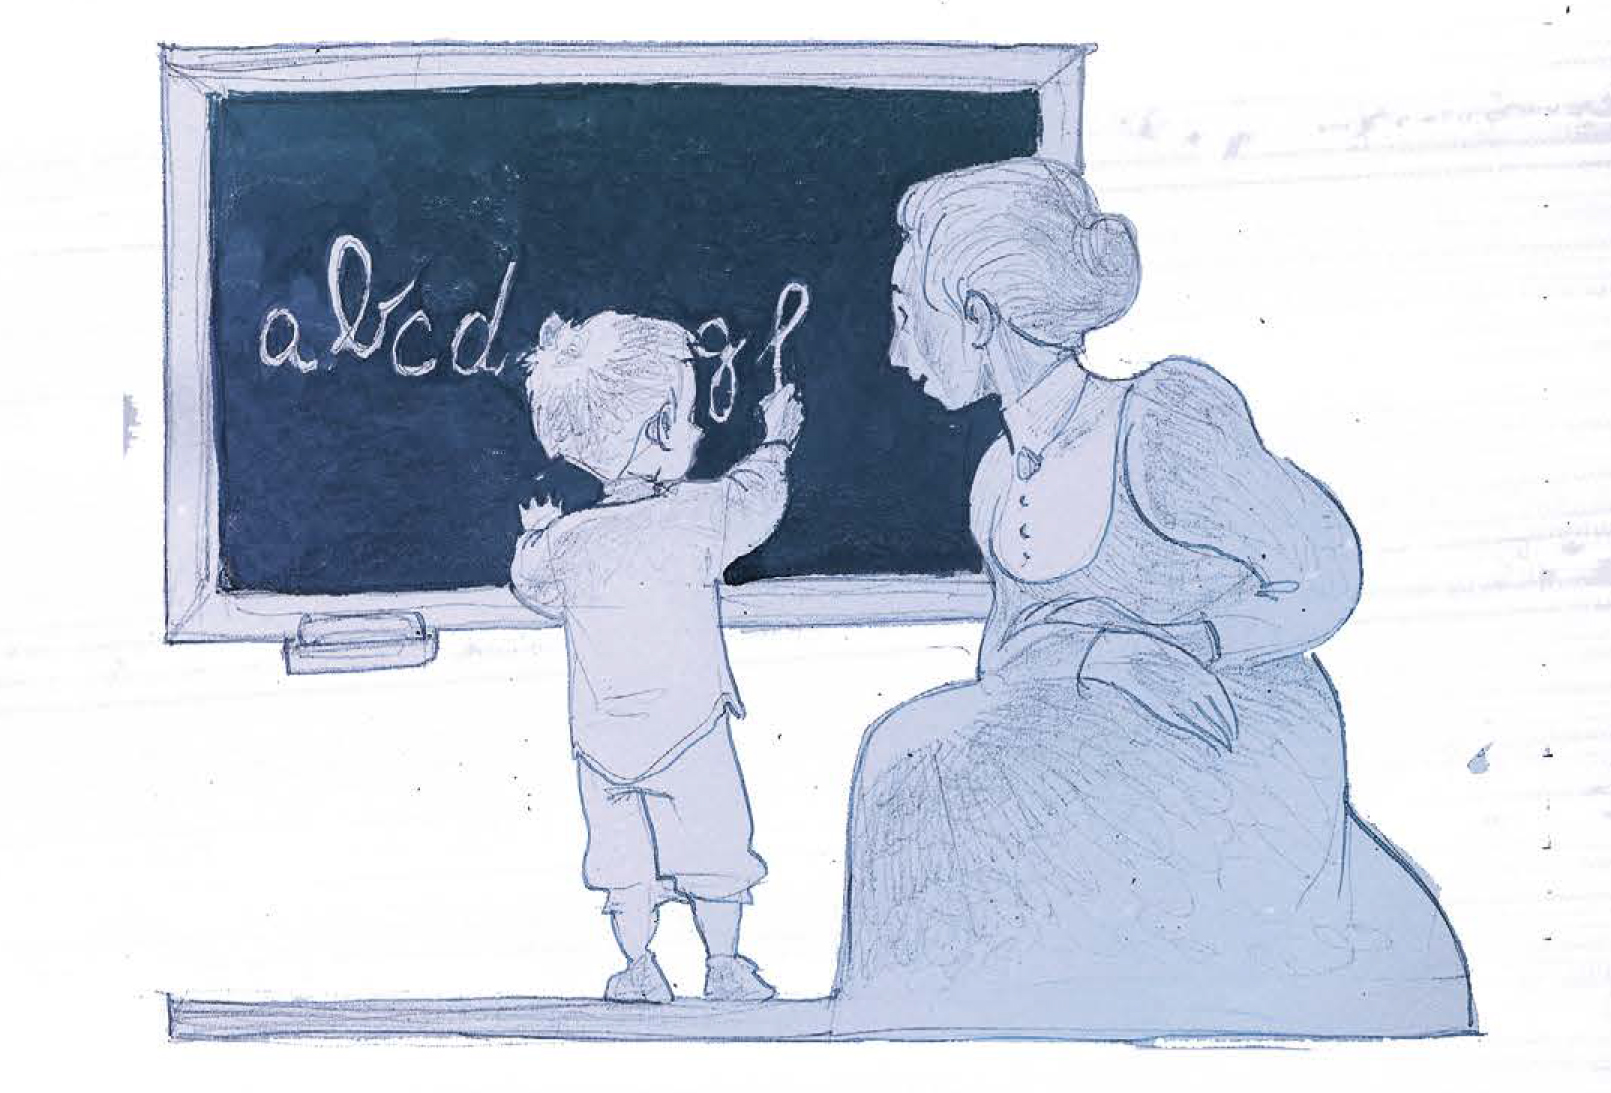 "Maria Montessori, il metodo improprio". Testi di Alessio Surian e Diego Di Masi; disegni di Silvio Boselli (BeccoGiallo editore)